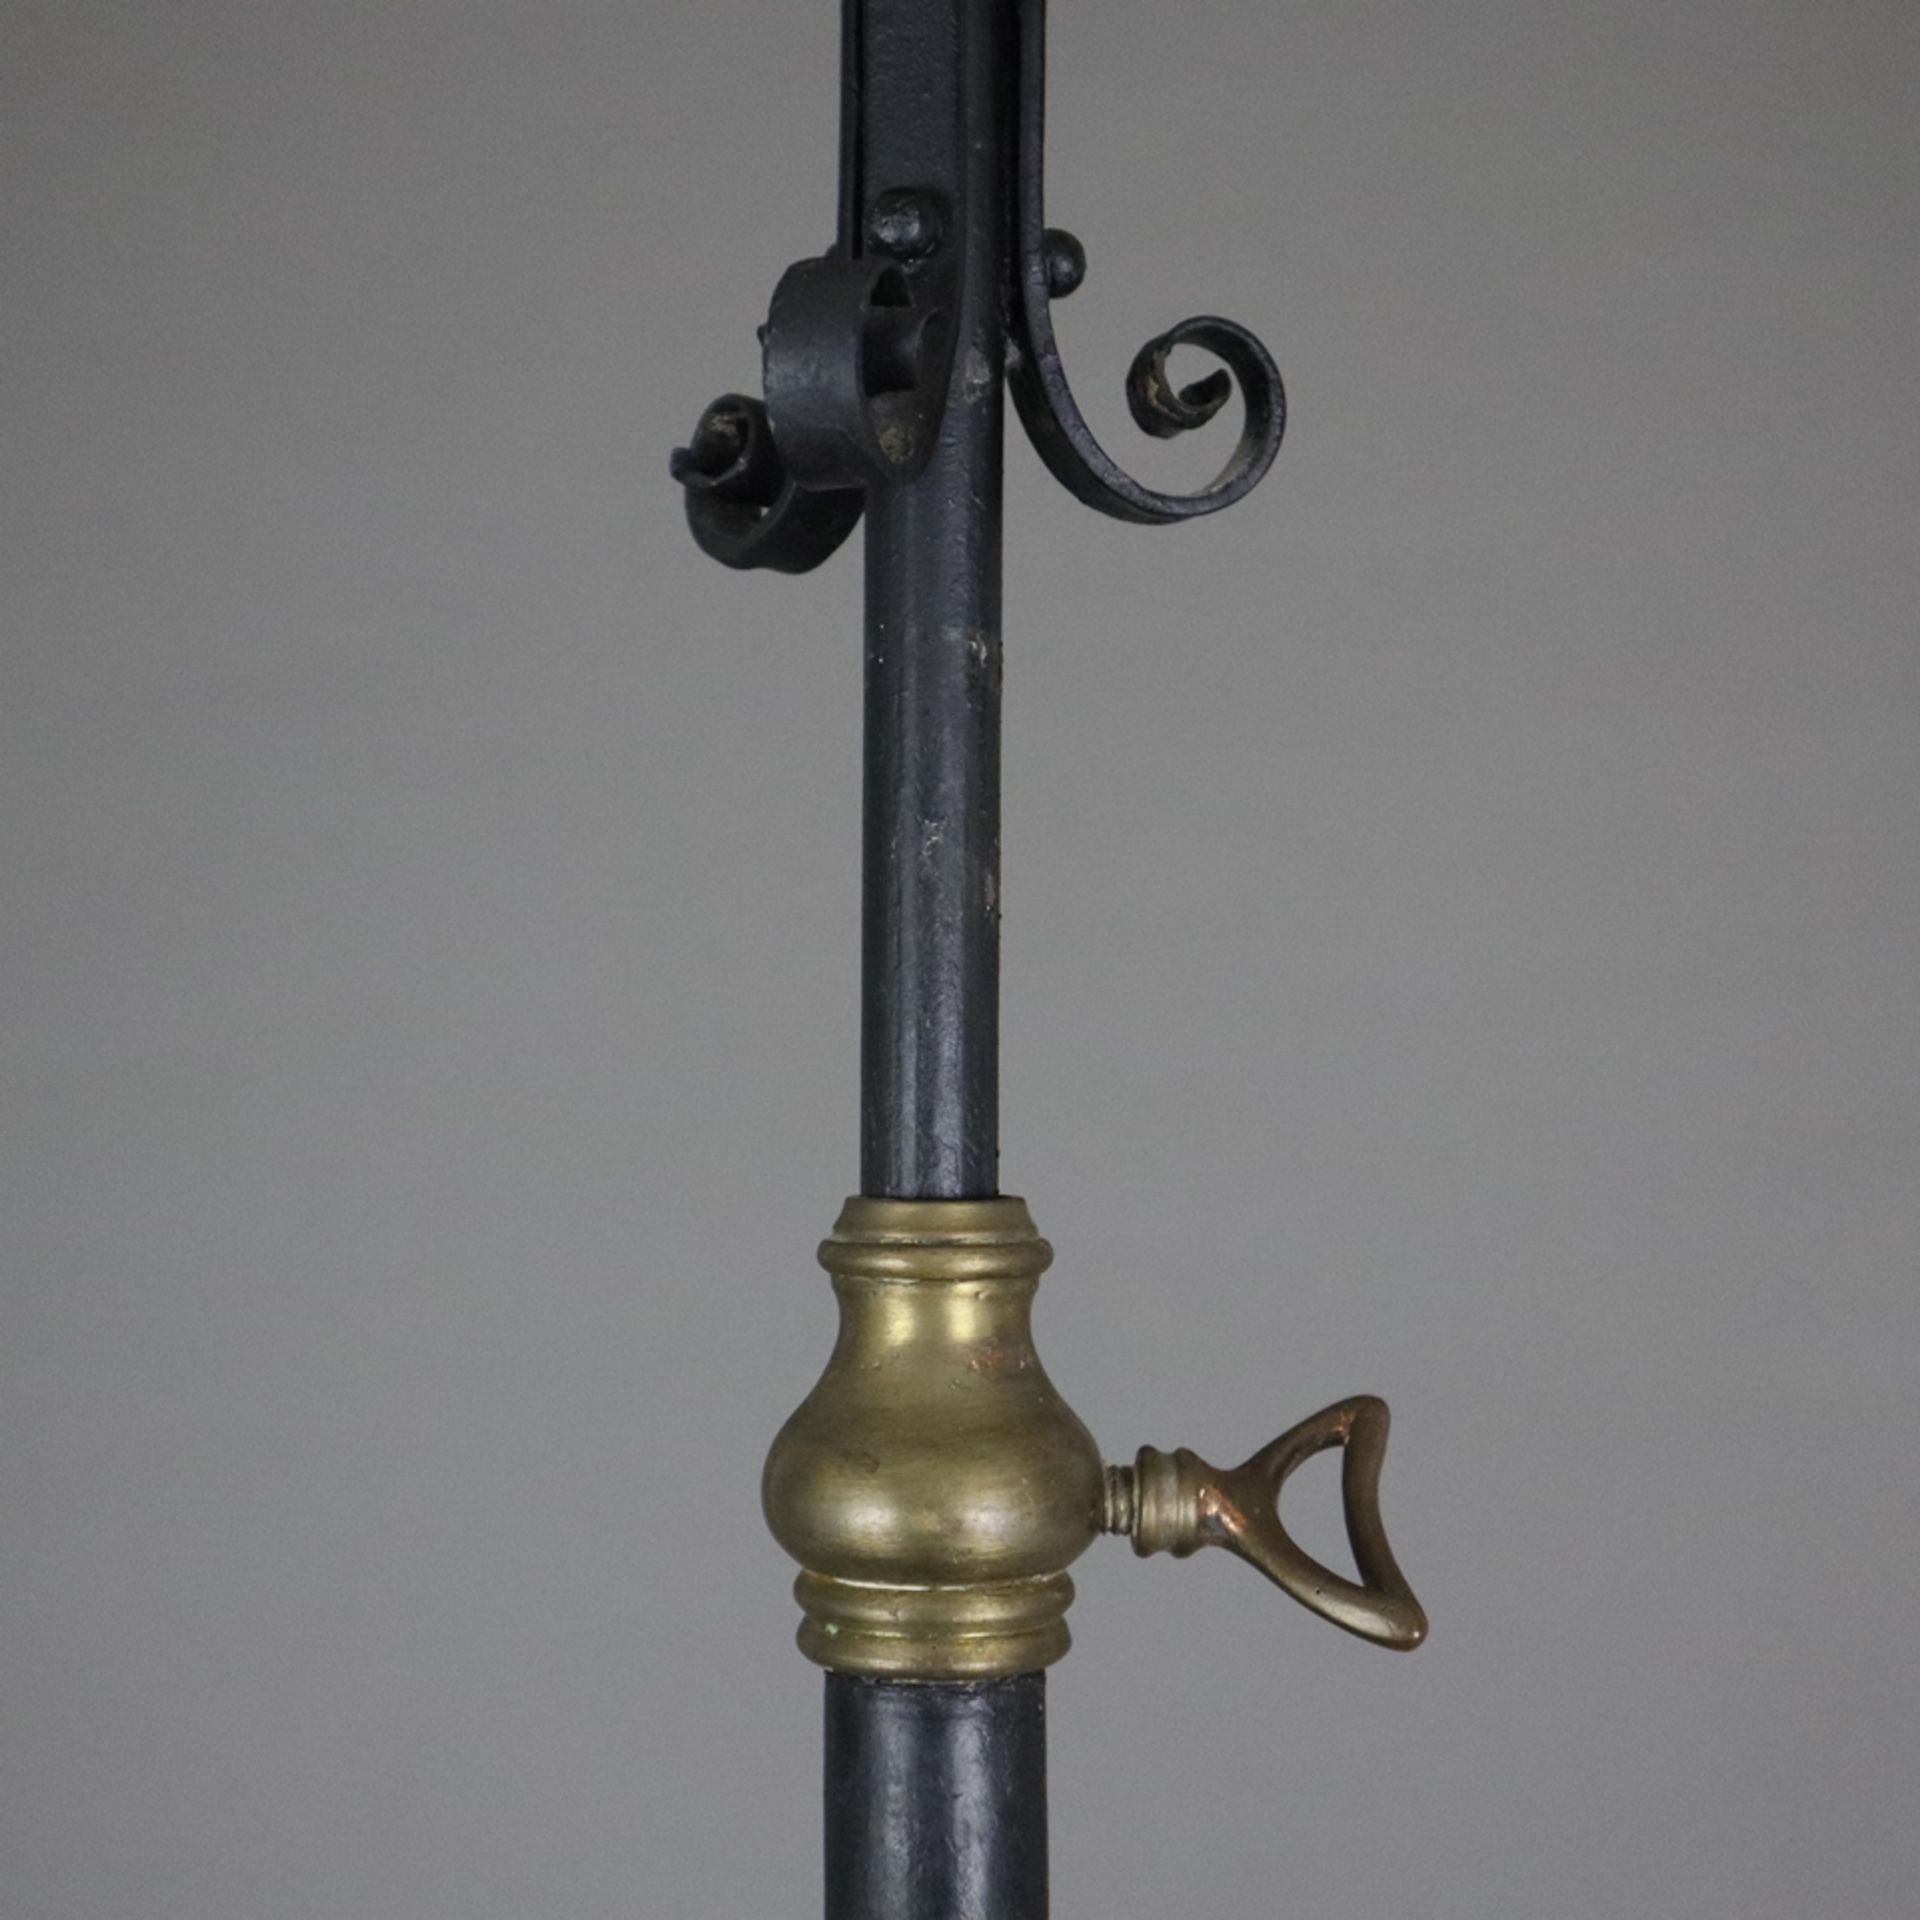 Stehlampe - Ende 19. Jh. / um 1900, Kunstschmiedeeisen-Gestell mit Volutendekor, geschwärzt, farblo - Image 6 of 10